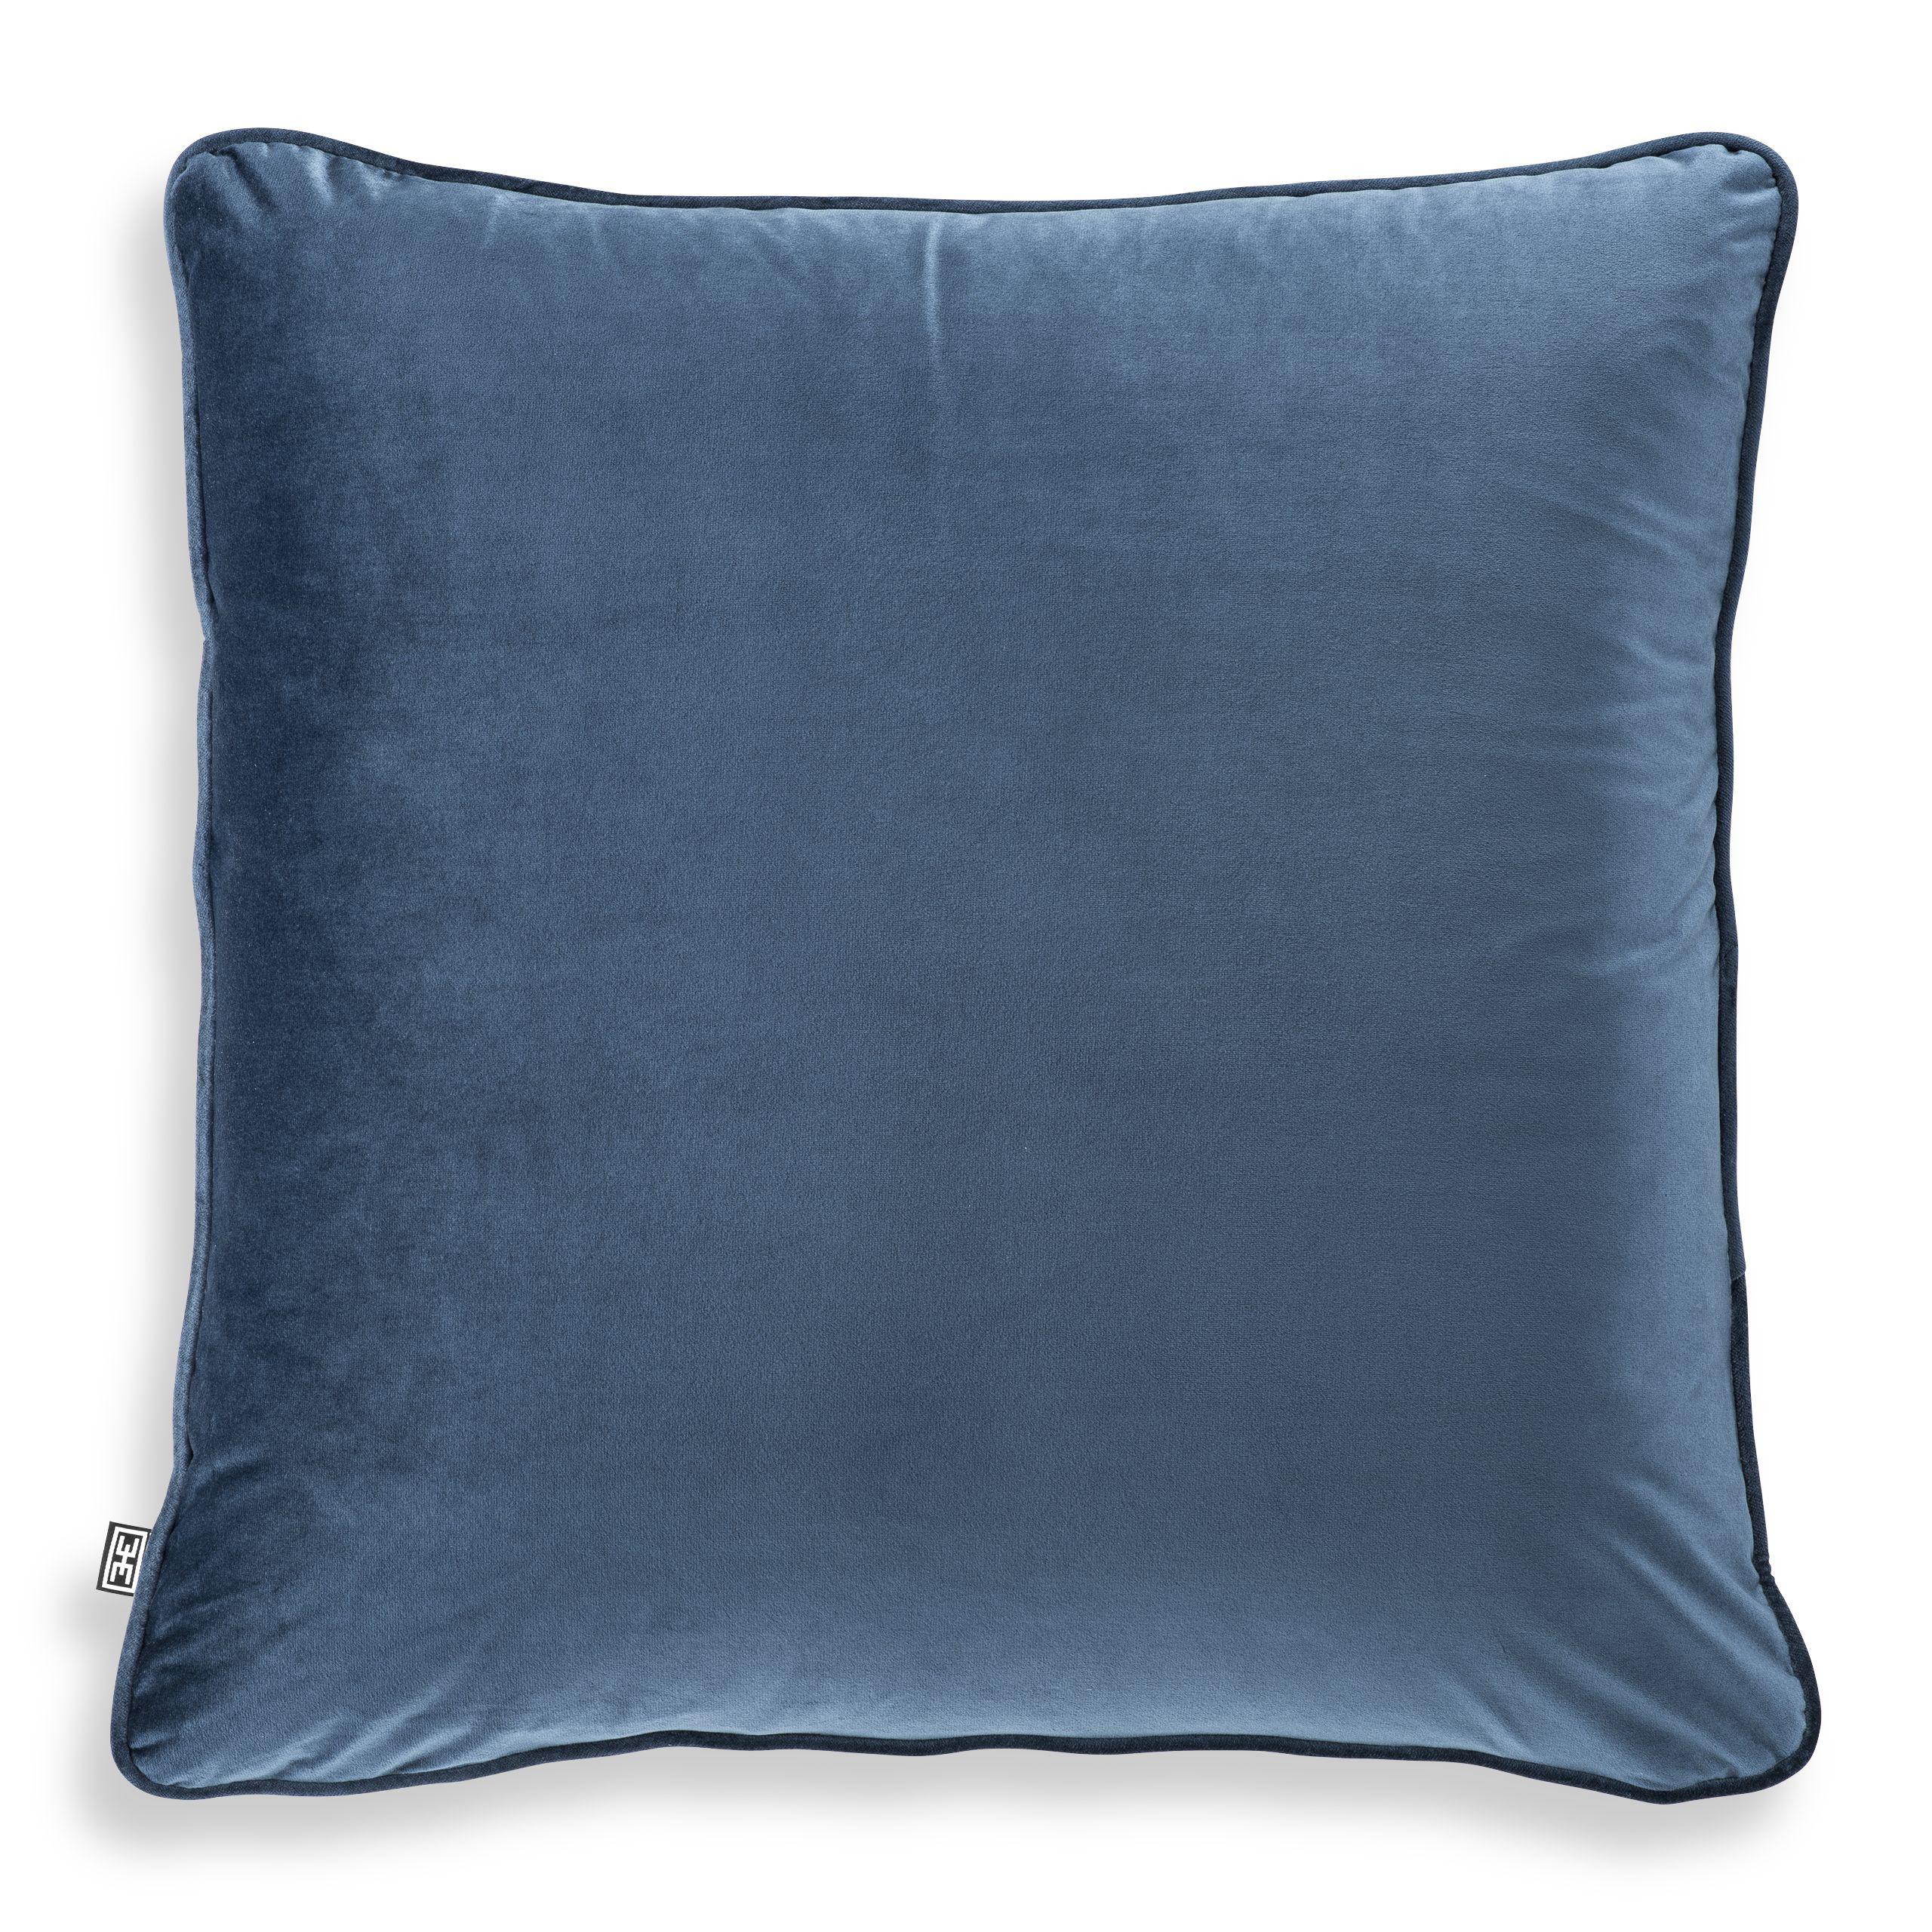 Купить Декоративная подушка Cushion Roche в интернет-магазине roooms.ru